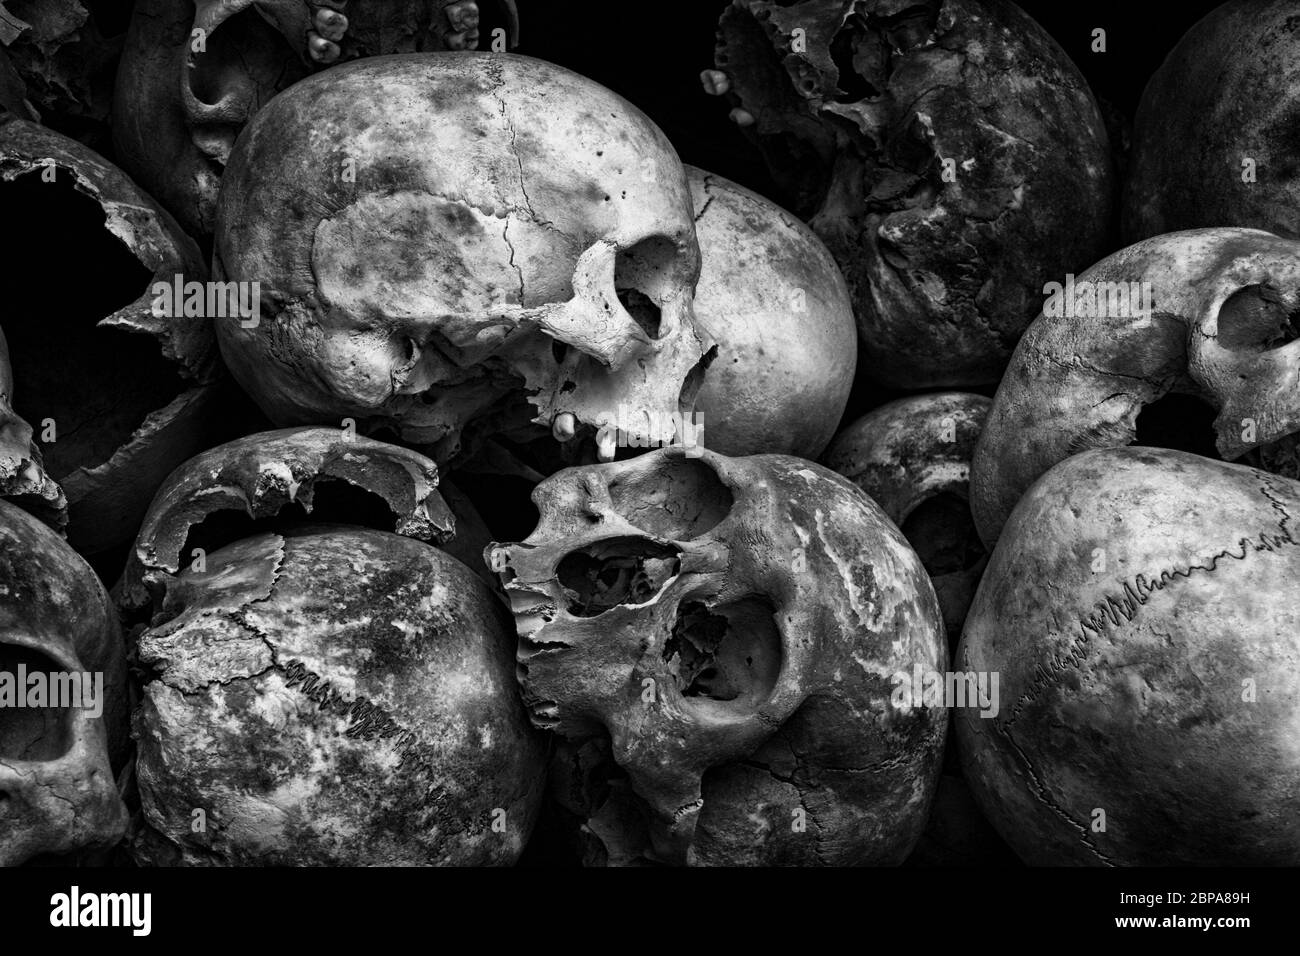 CAMBODIA | KILLING FIELDS | Stock Photo